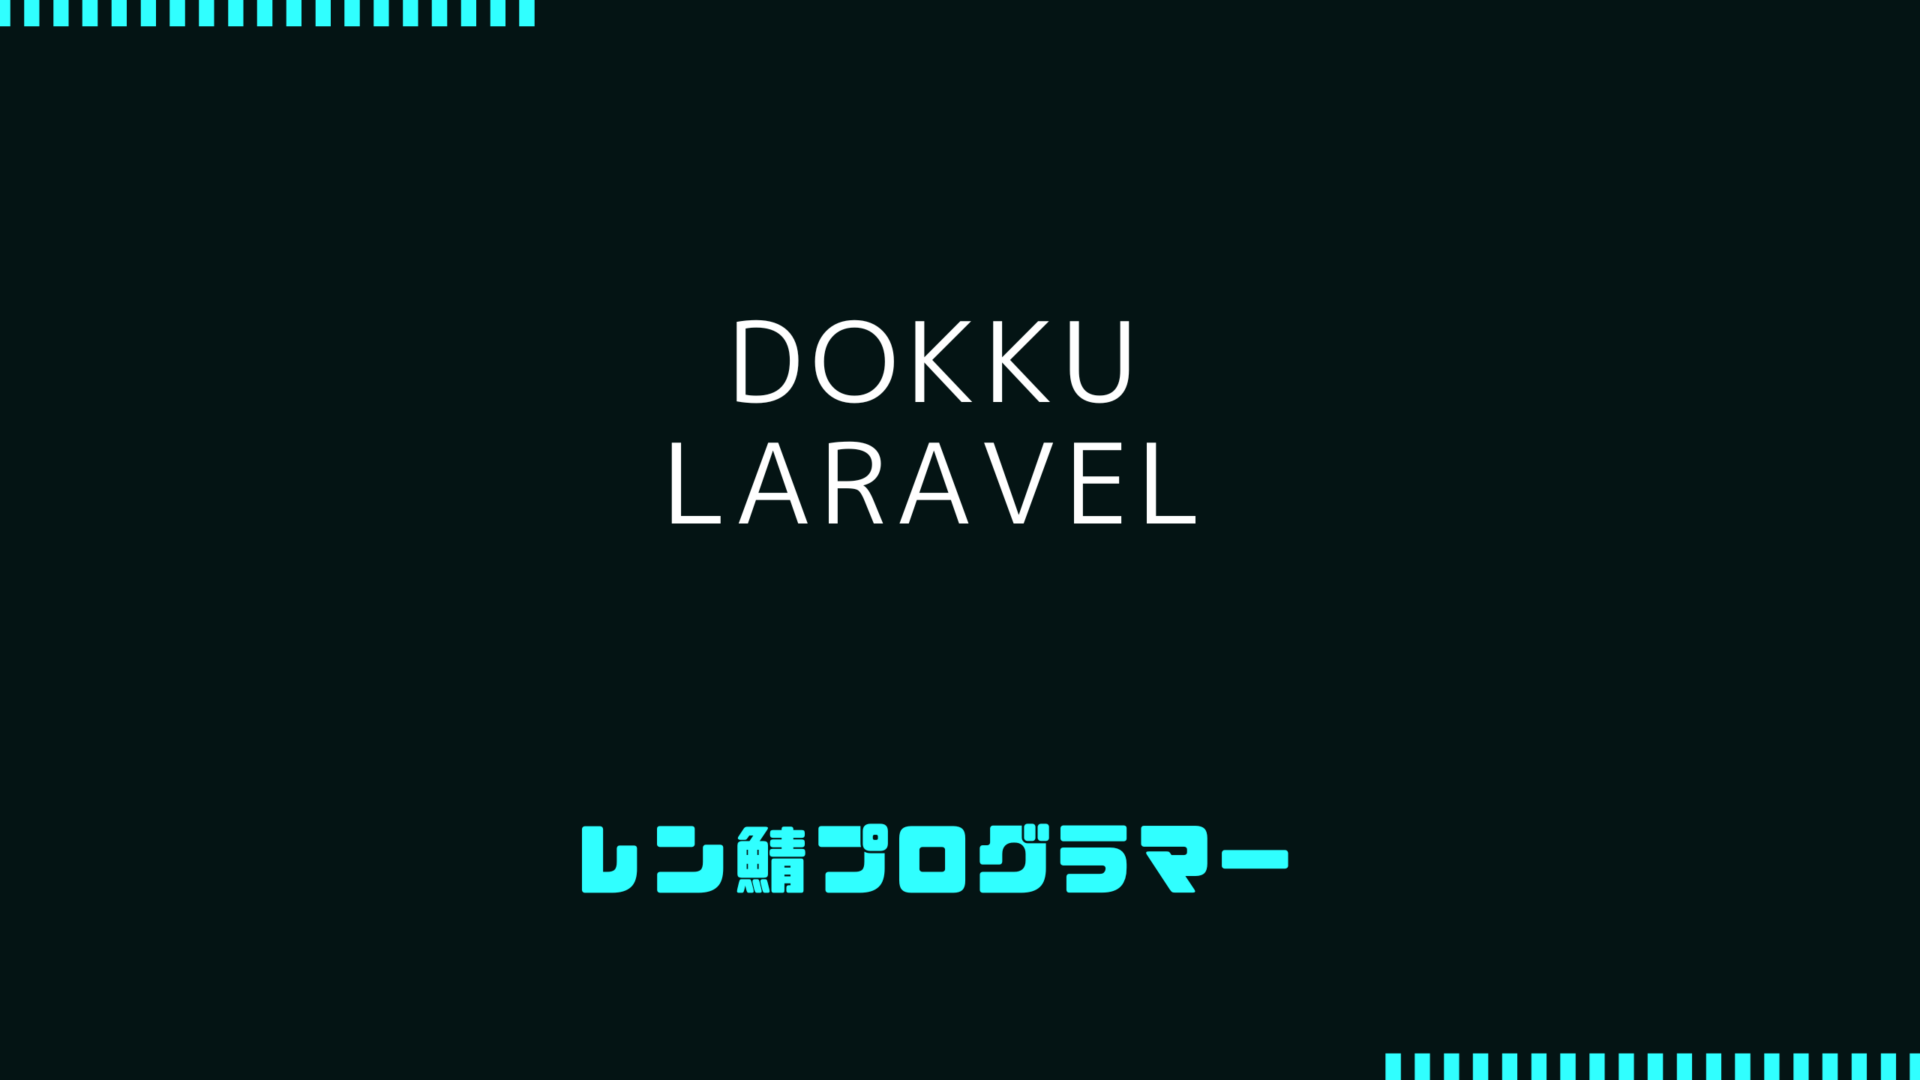 DokkuにLaravelをデプロイする設定